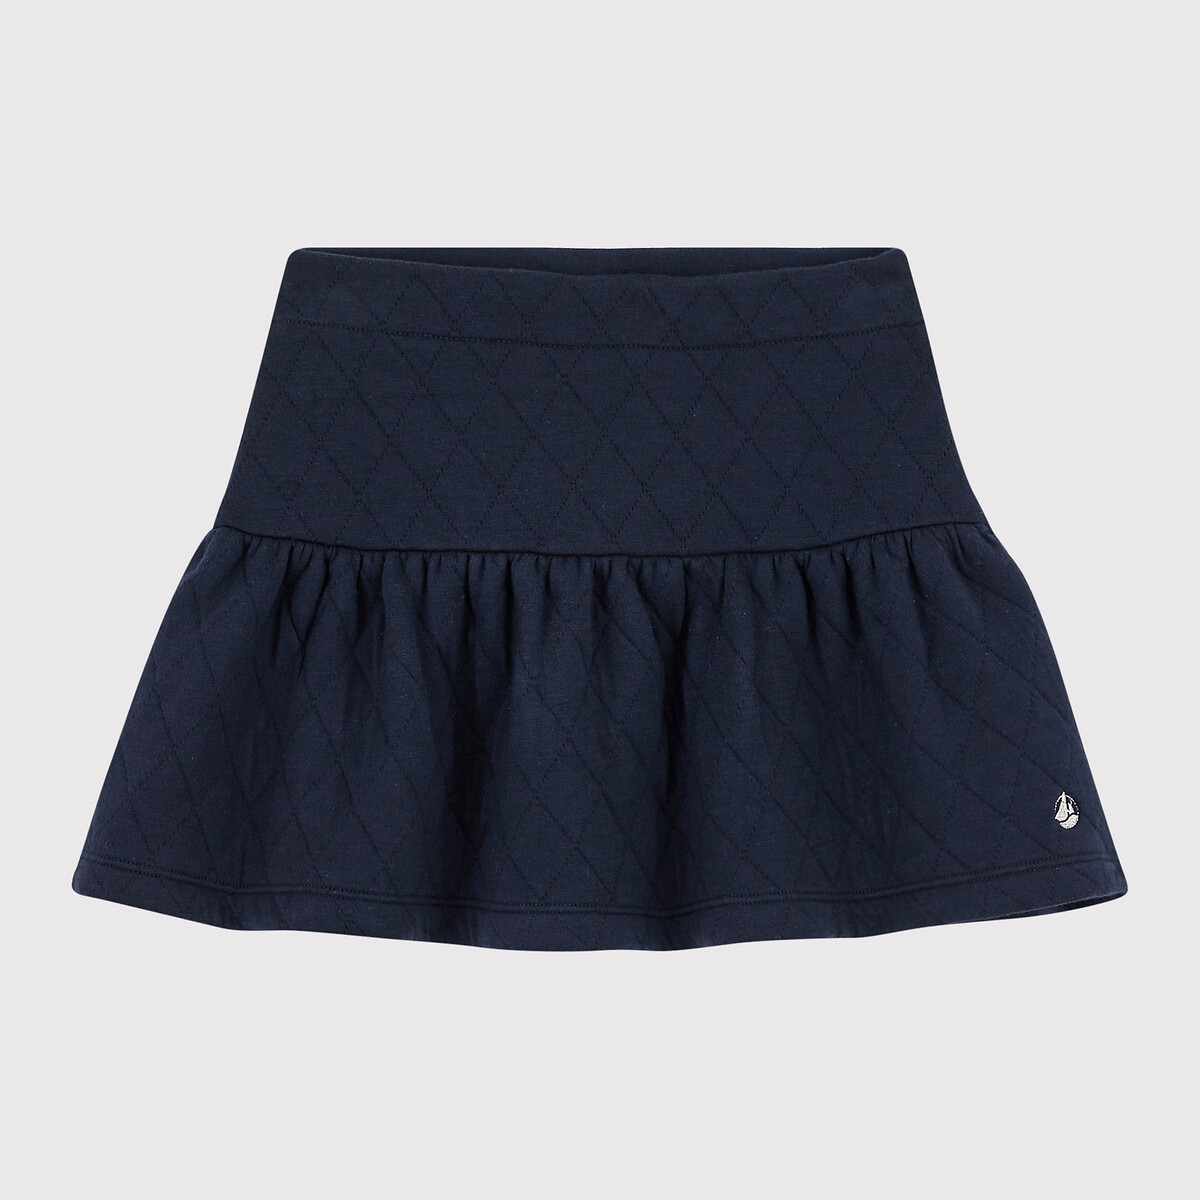 Petit Bateau Girls Skirt